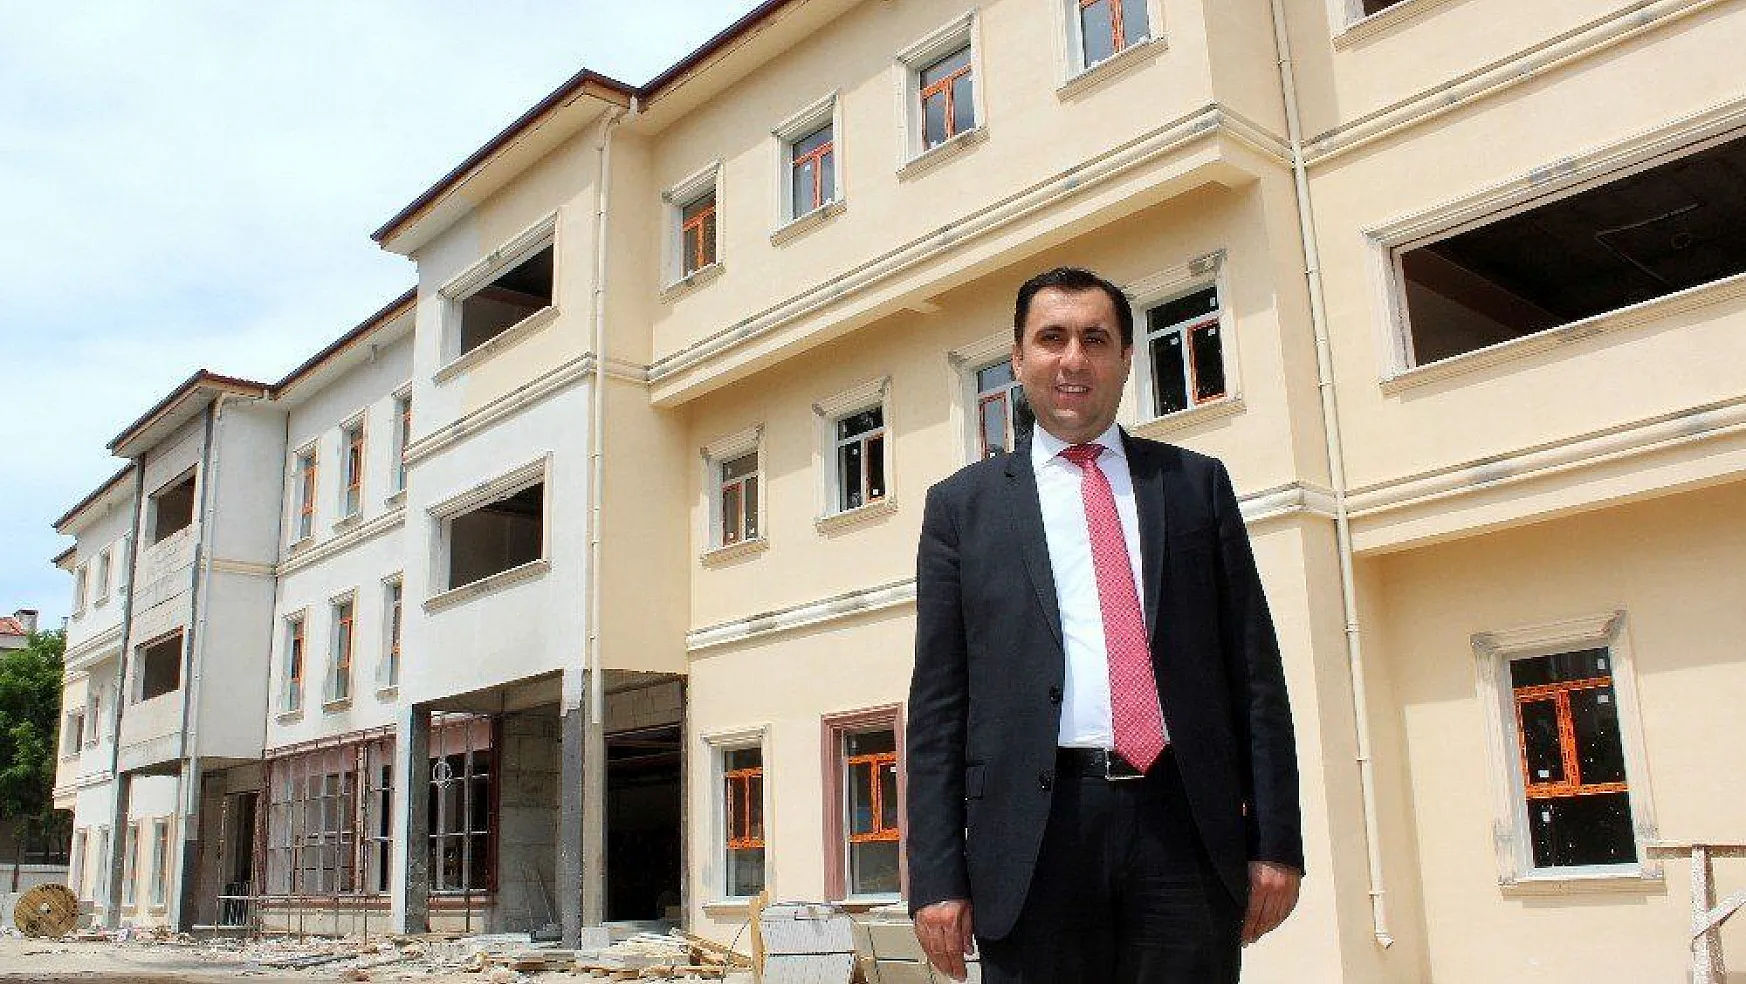 İl Müdürü Türkoğlu: 'Yeni hizmet binamızın inşaatı hızla ilerliyor'